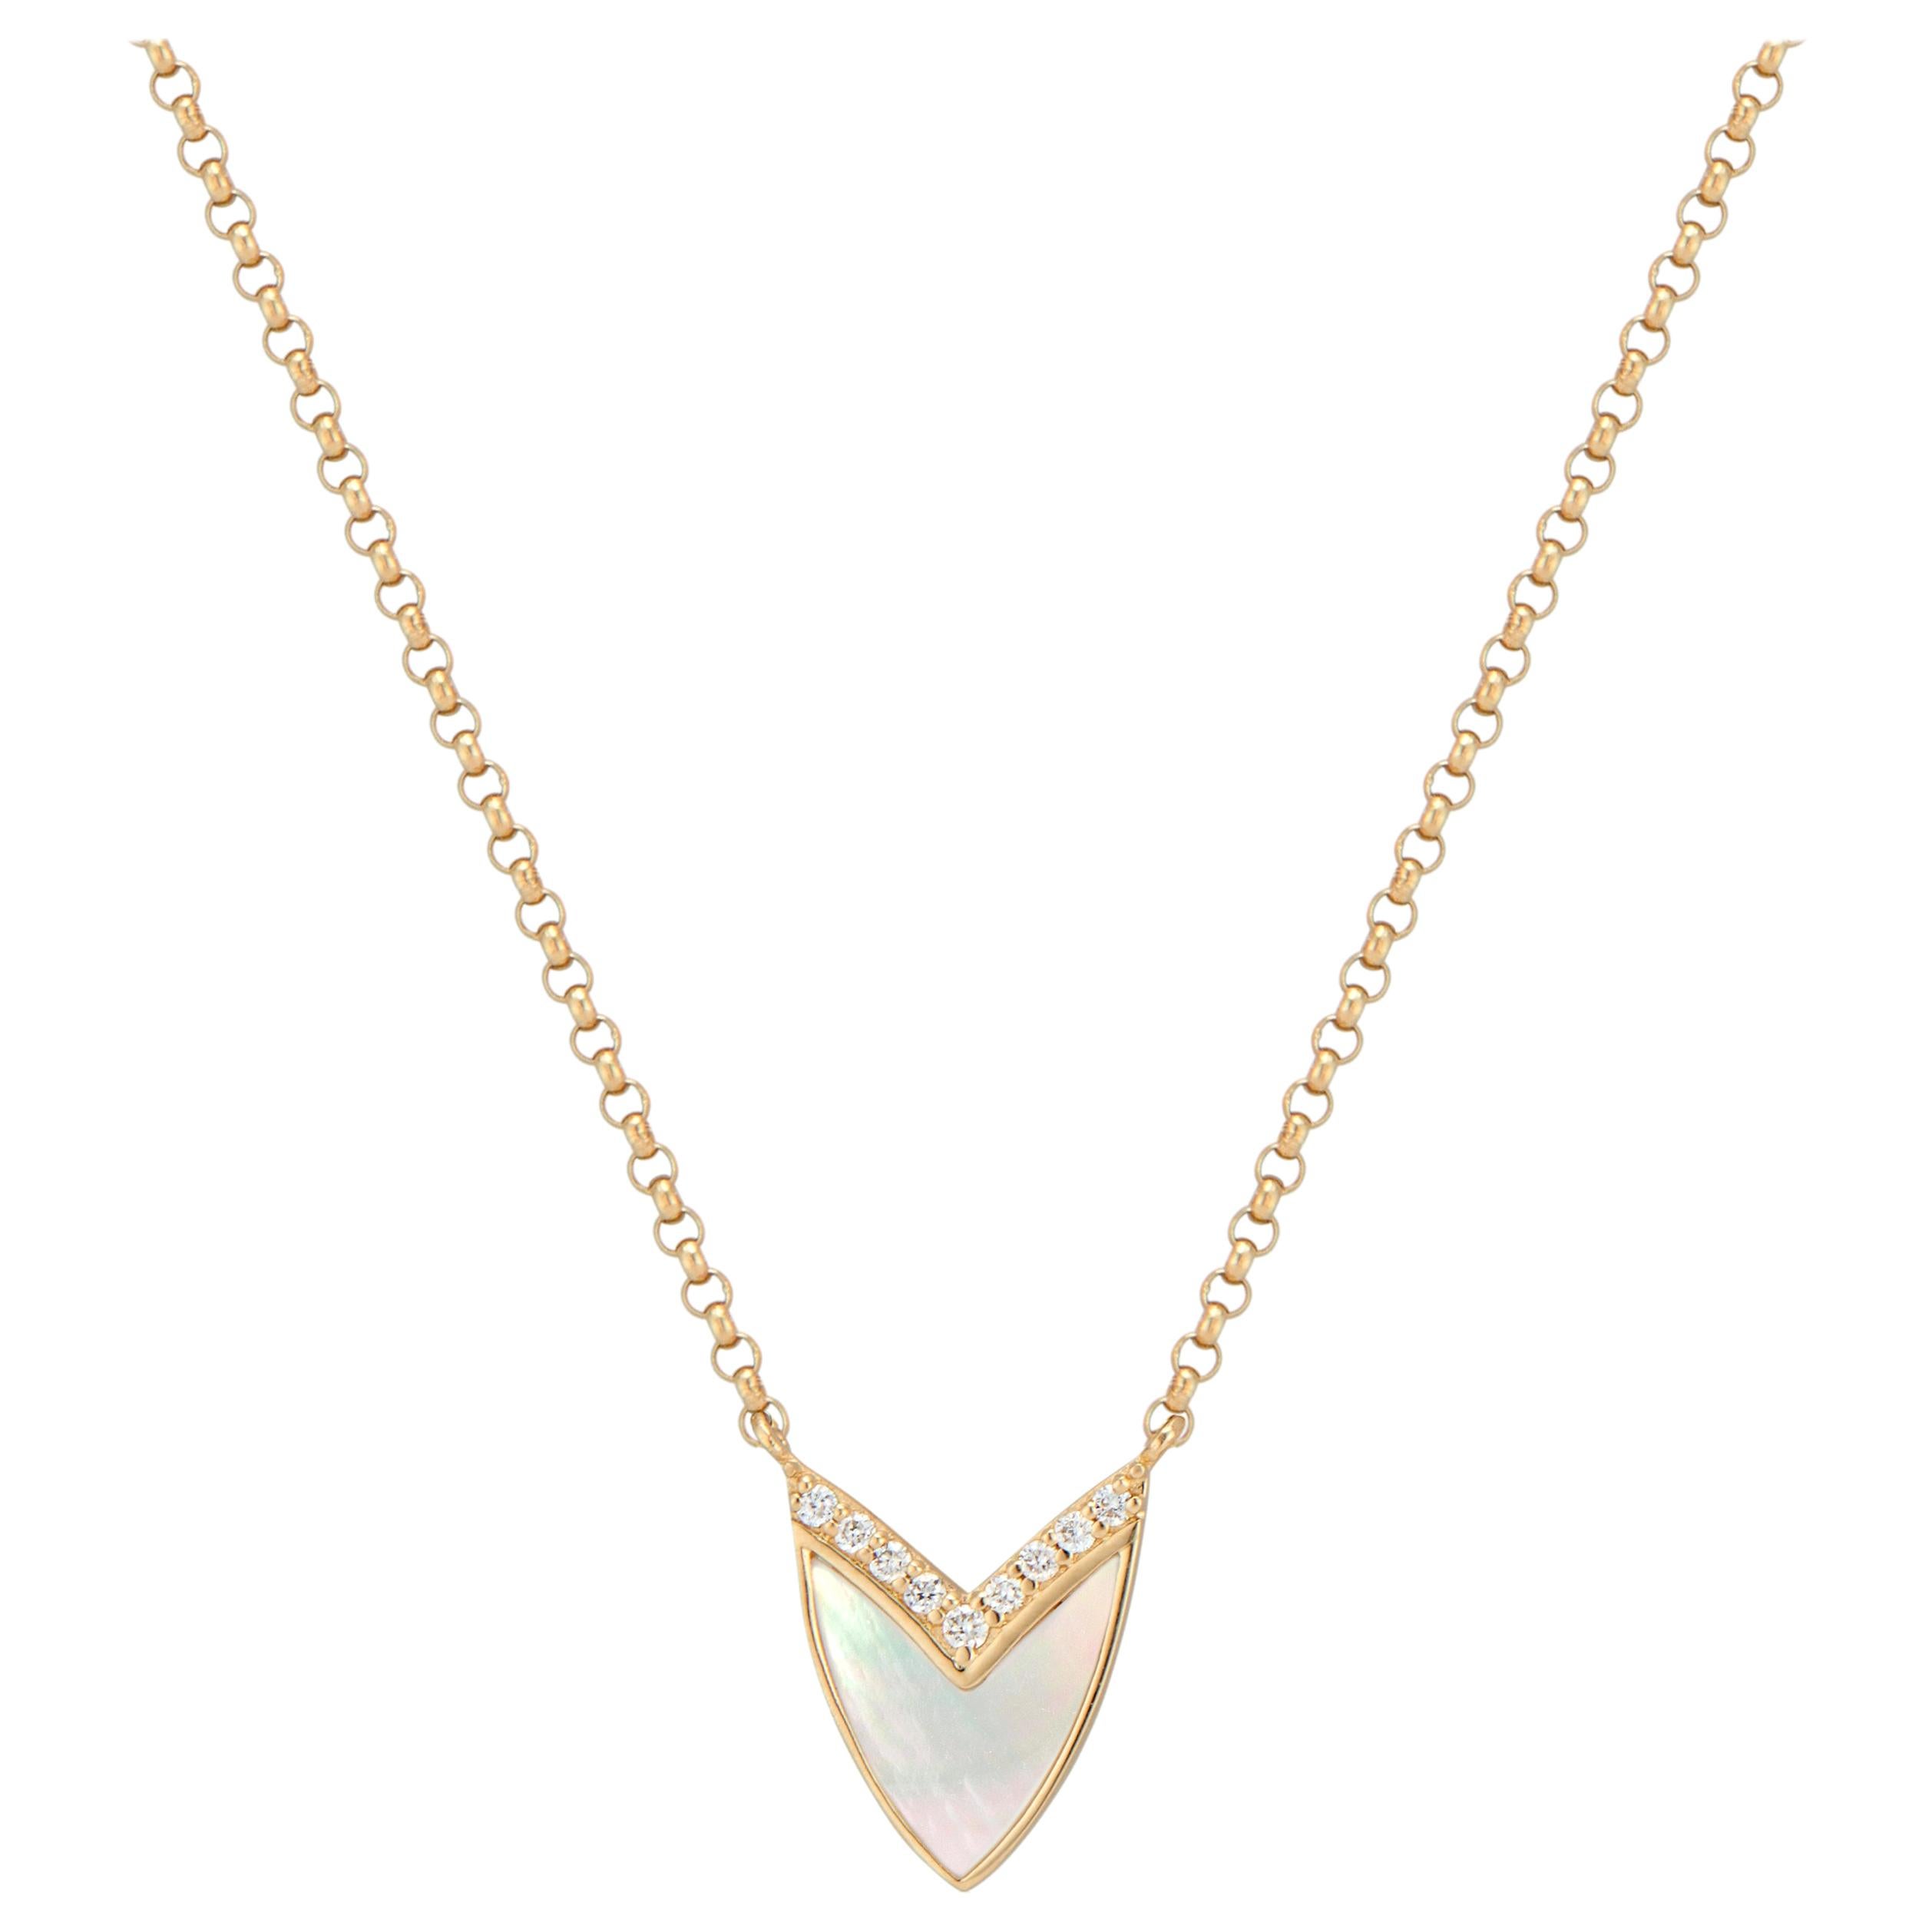 Kubistische Herz-Halskette aus Gelbgold mit Perlmutt und Diamanten